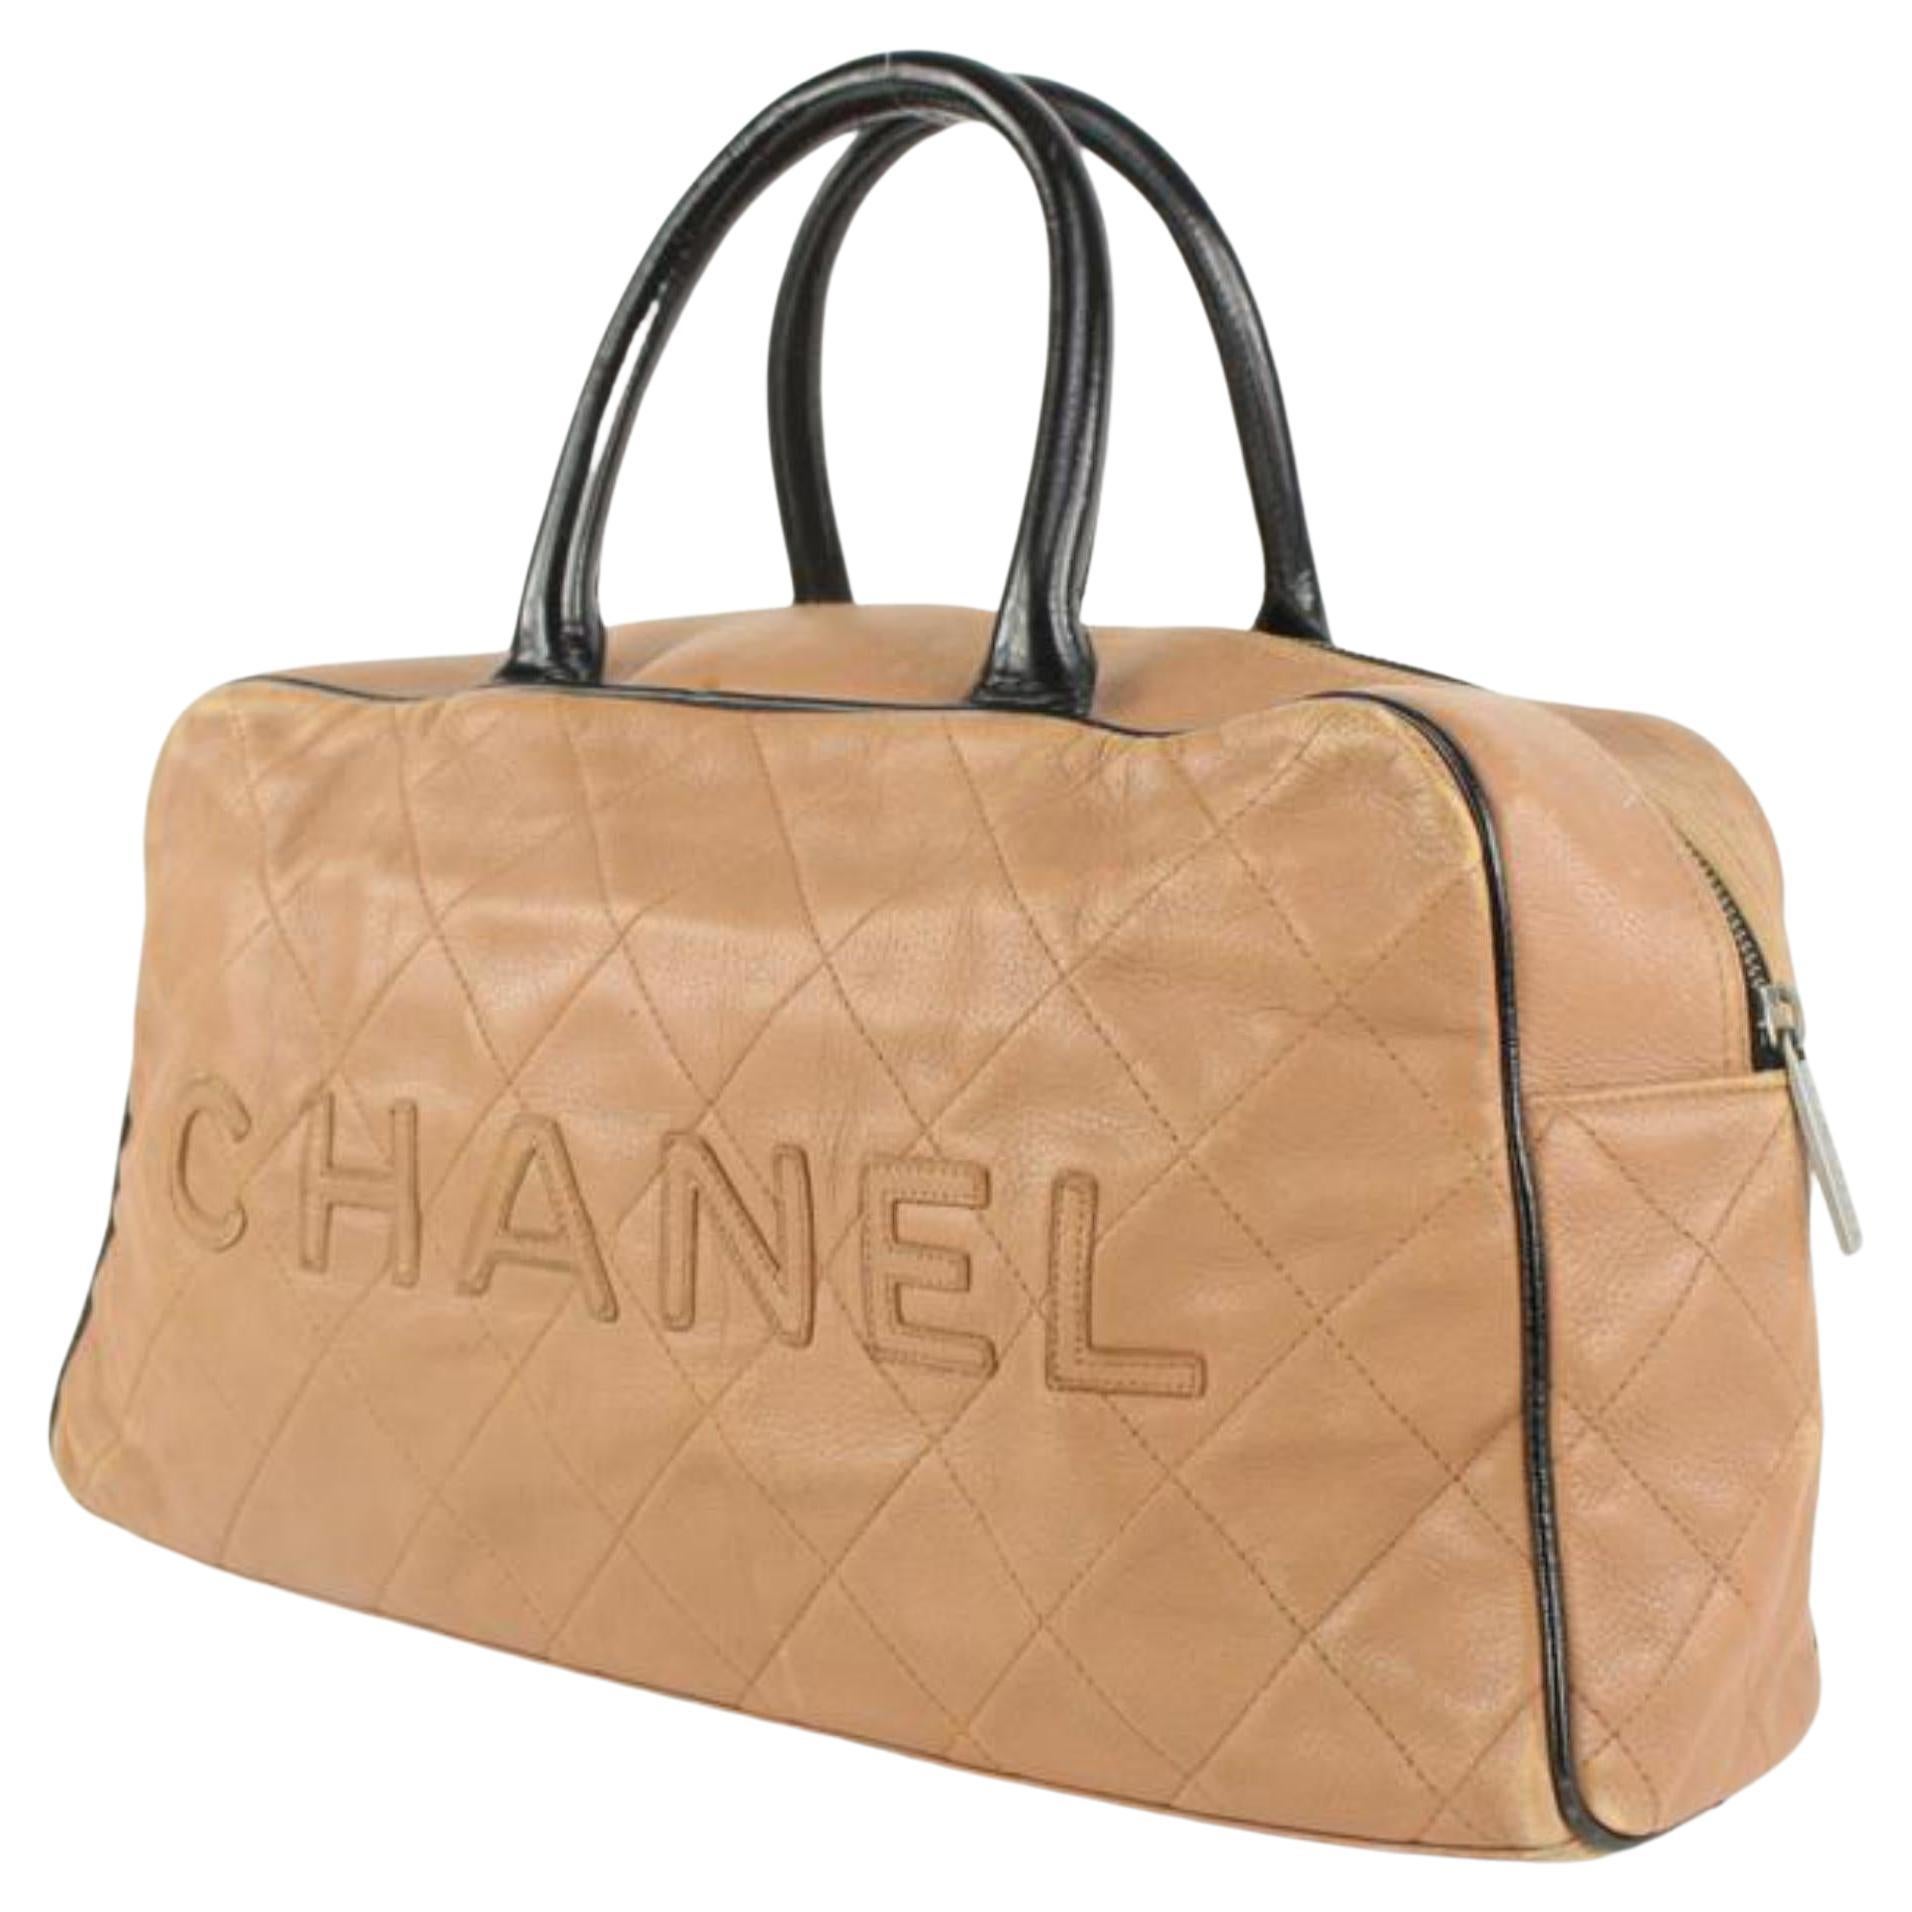 Chanel Bowler-Tasche aus Leder in Schwarz x Rosa in Kaviar 1115c6